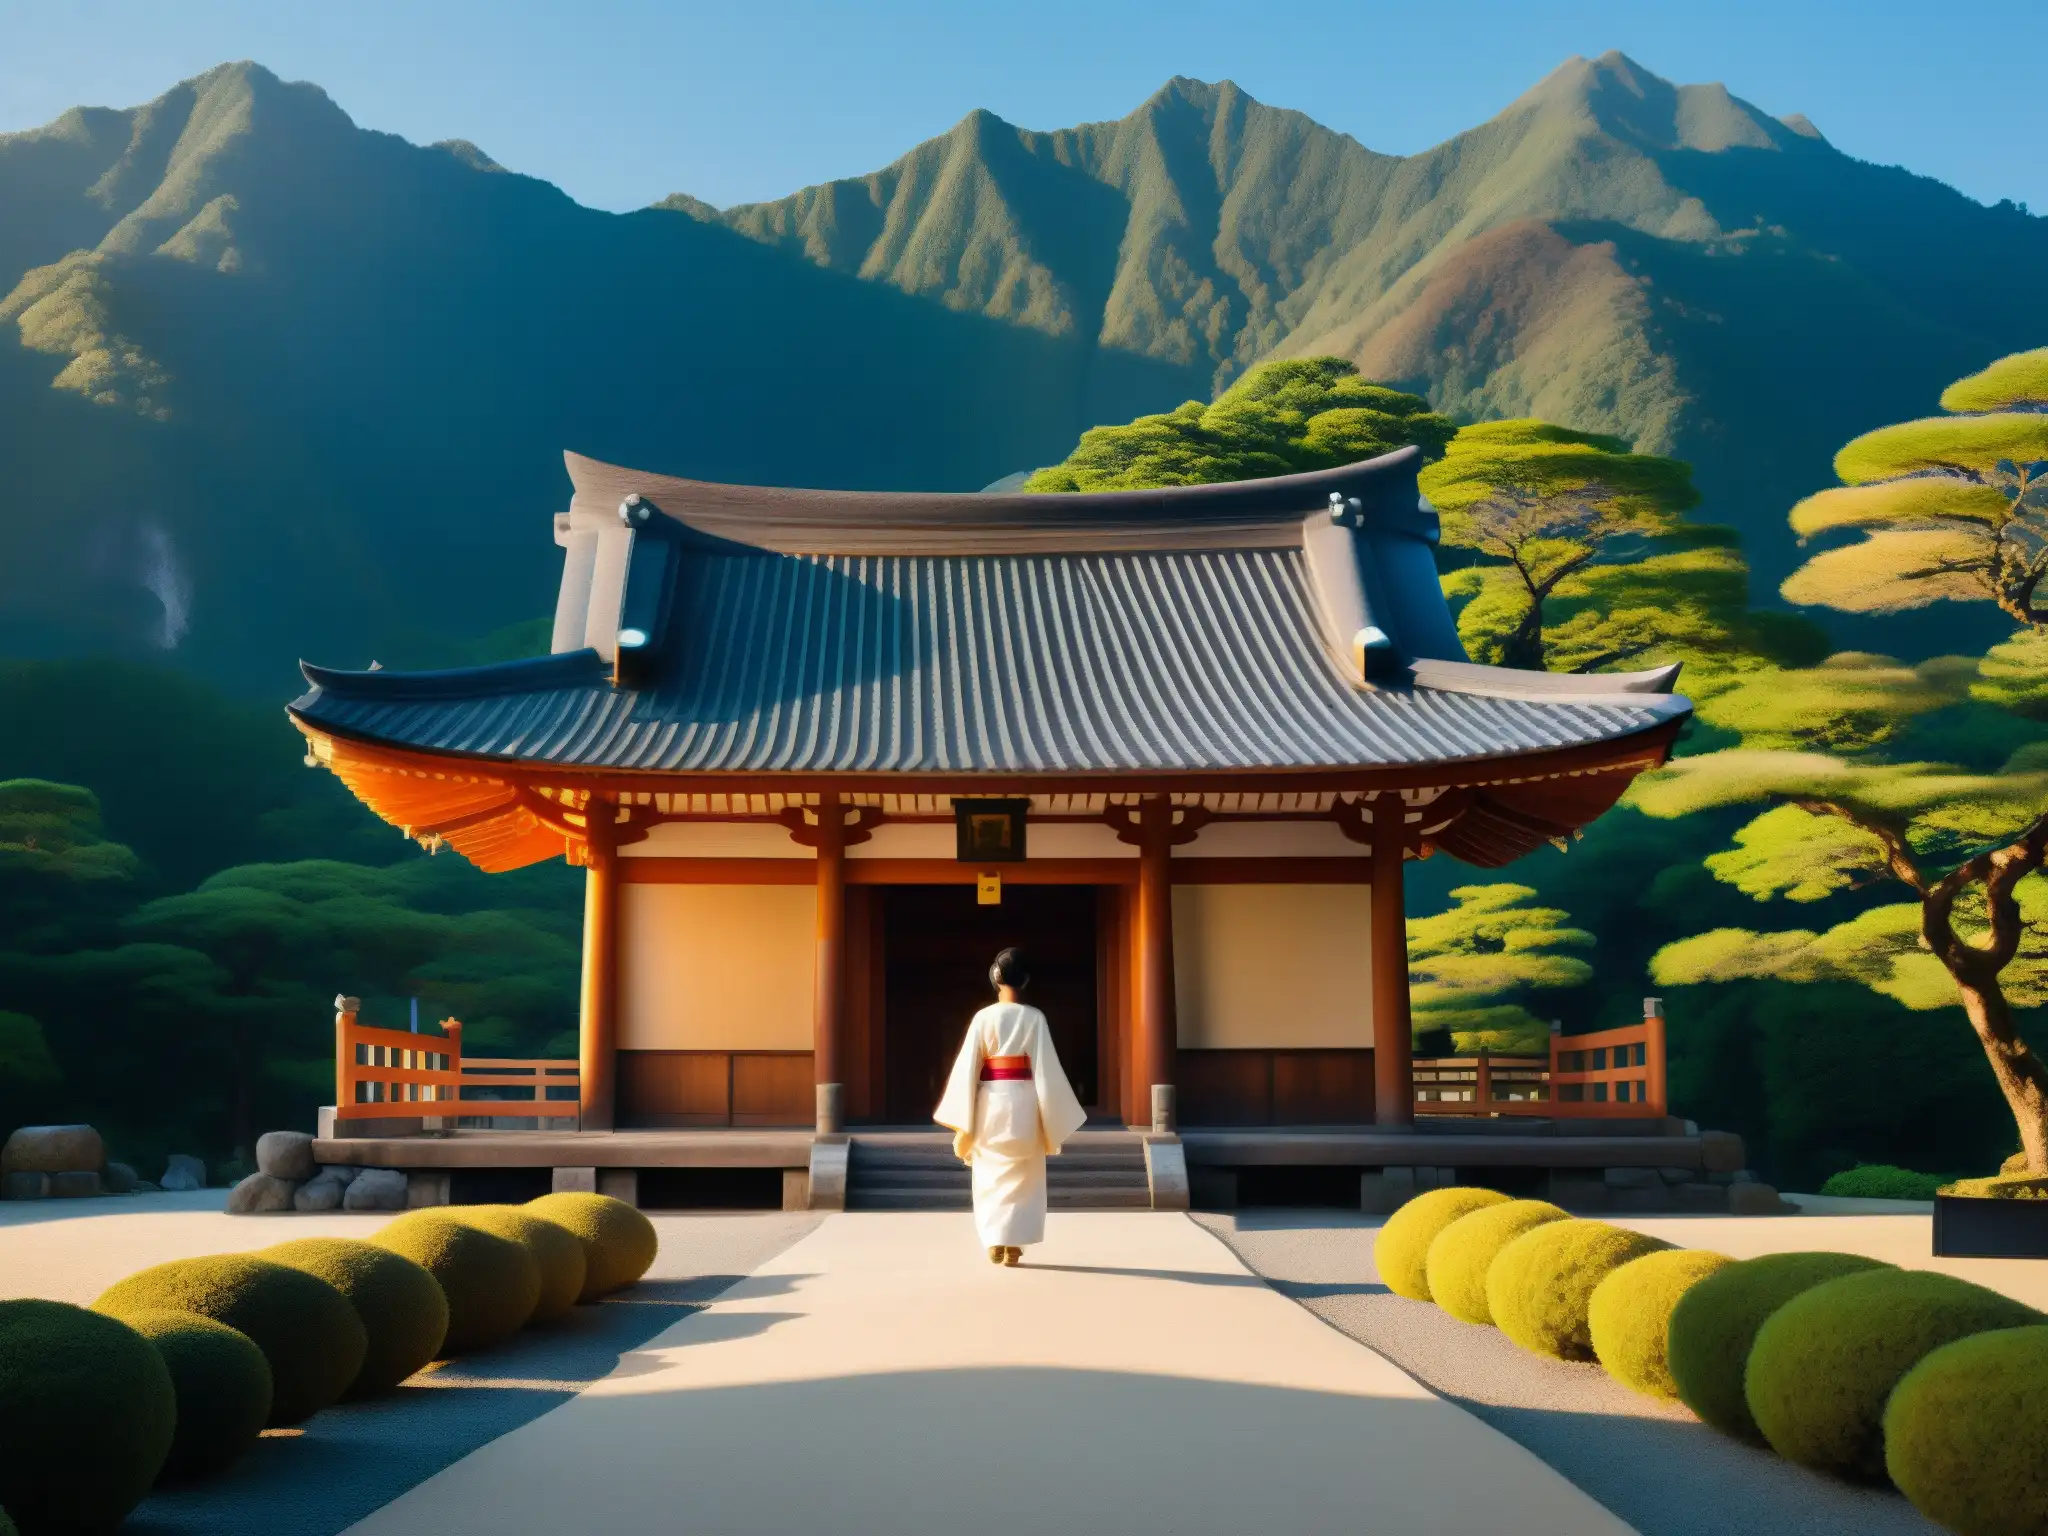 Una figura solitaria contempla un templo japonés entre montañas neblinosas